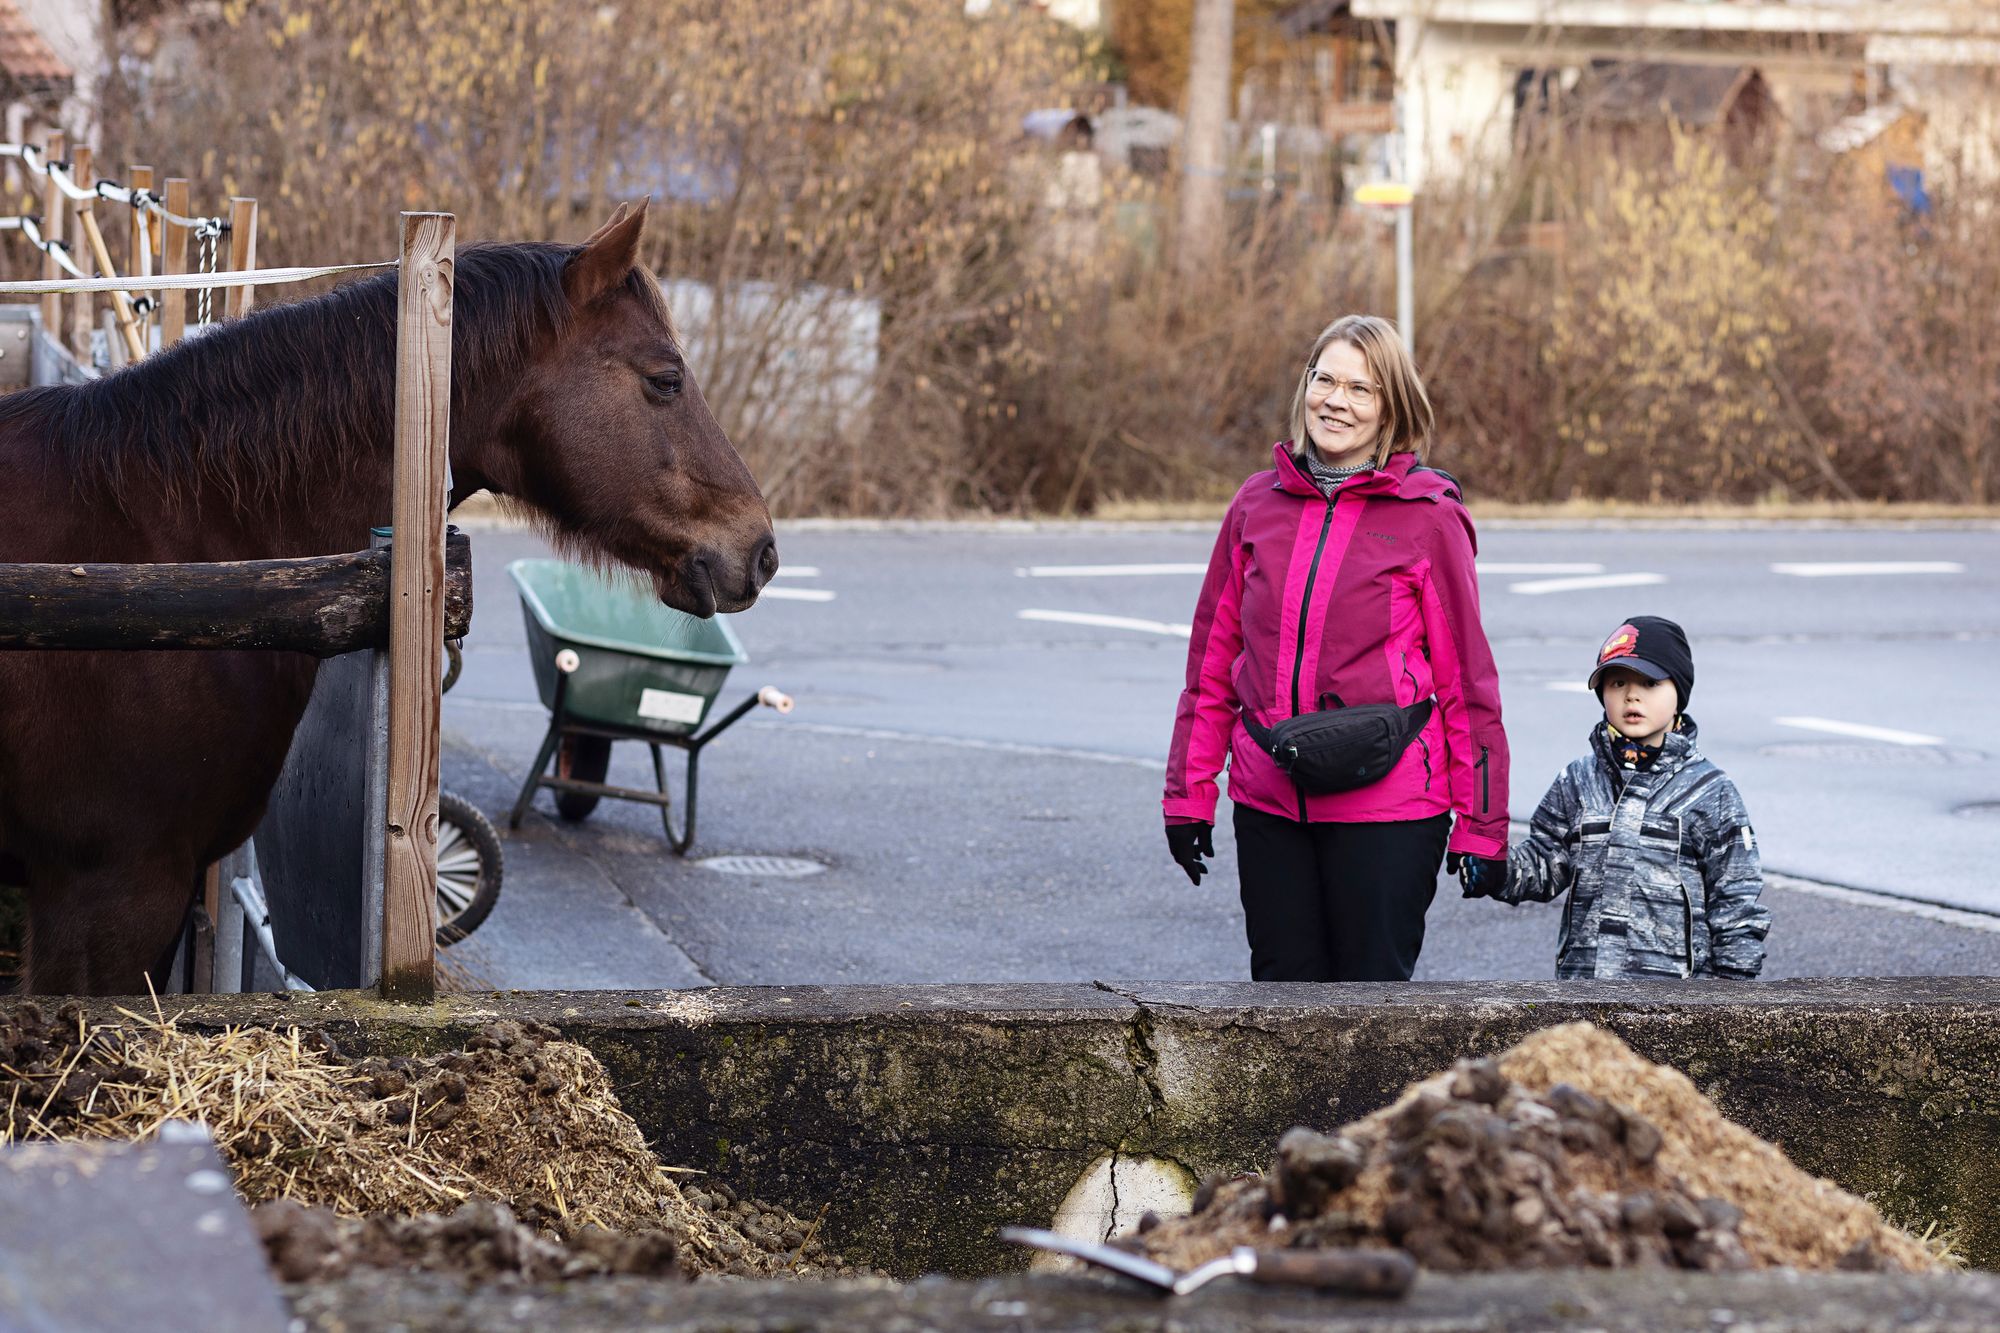 Kävelyretkillä näkee hevosia ja lehmiä, mutta eniten Axelia kiinnostavat työkoneet ja autot. © Kati Schneider